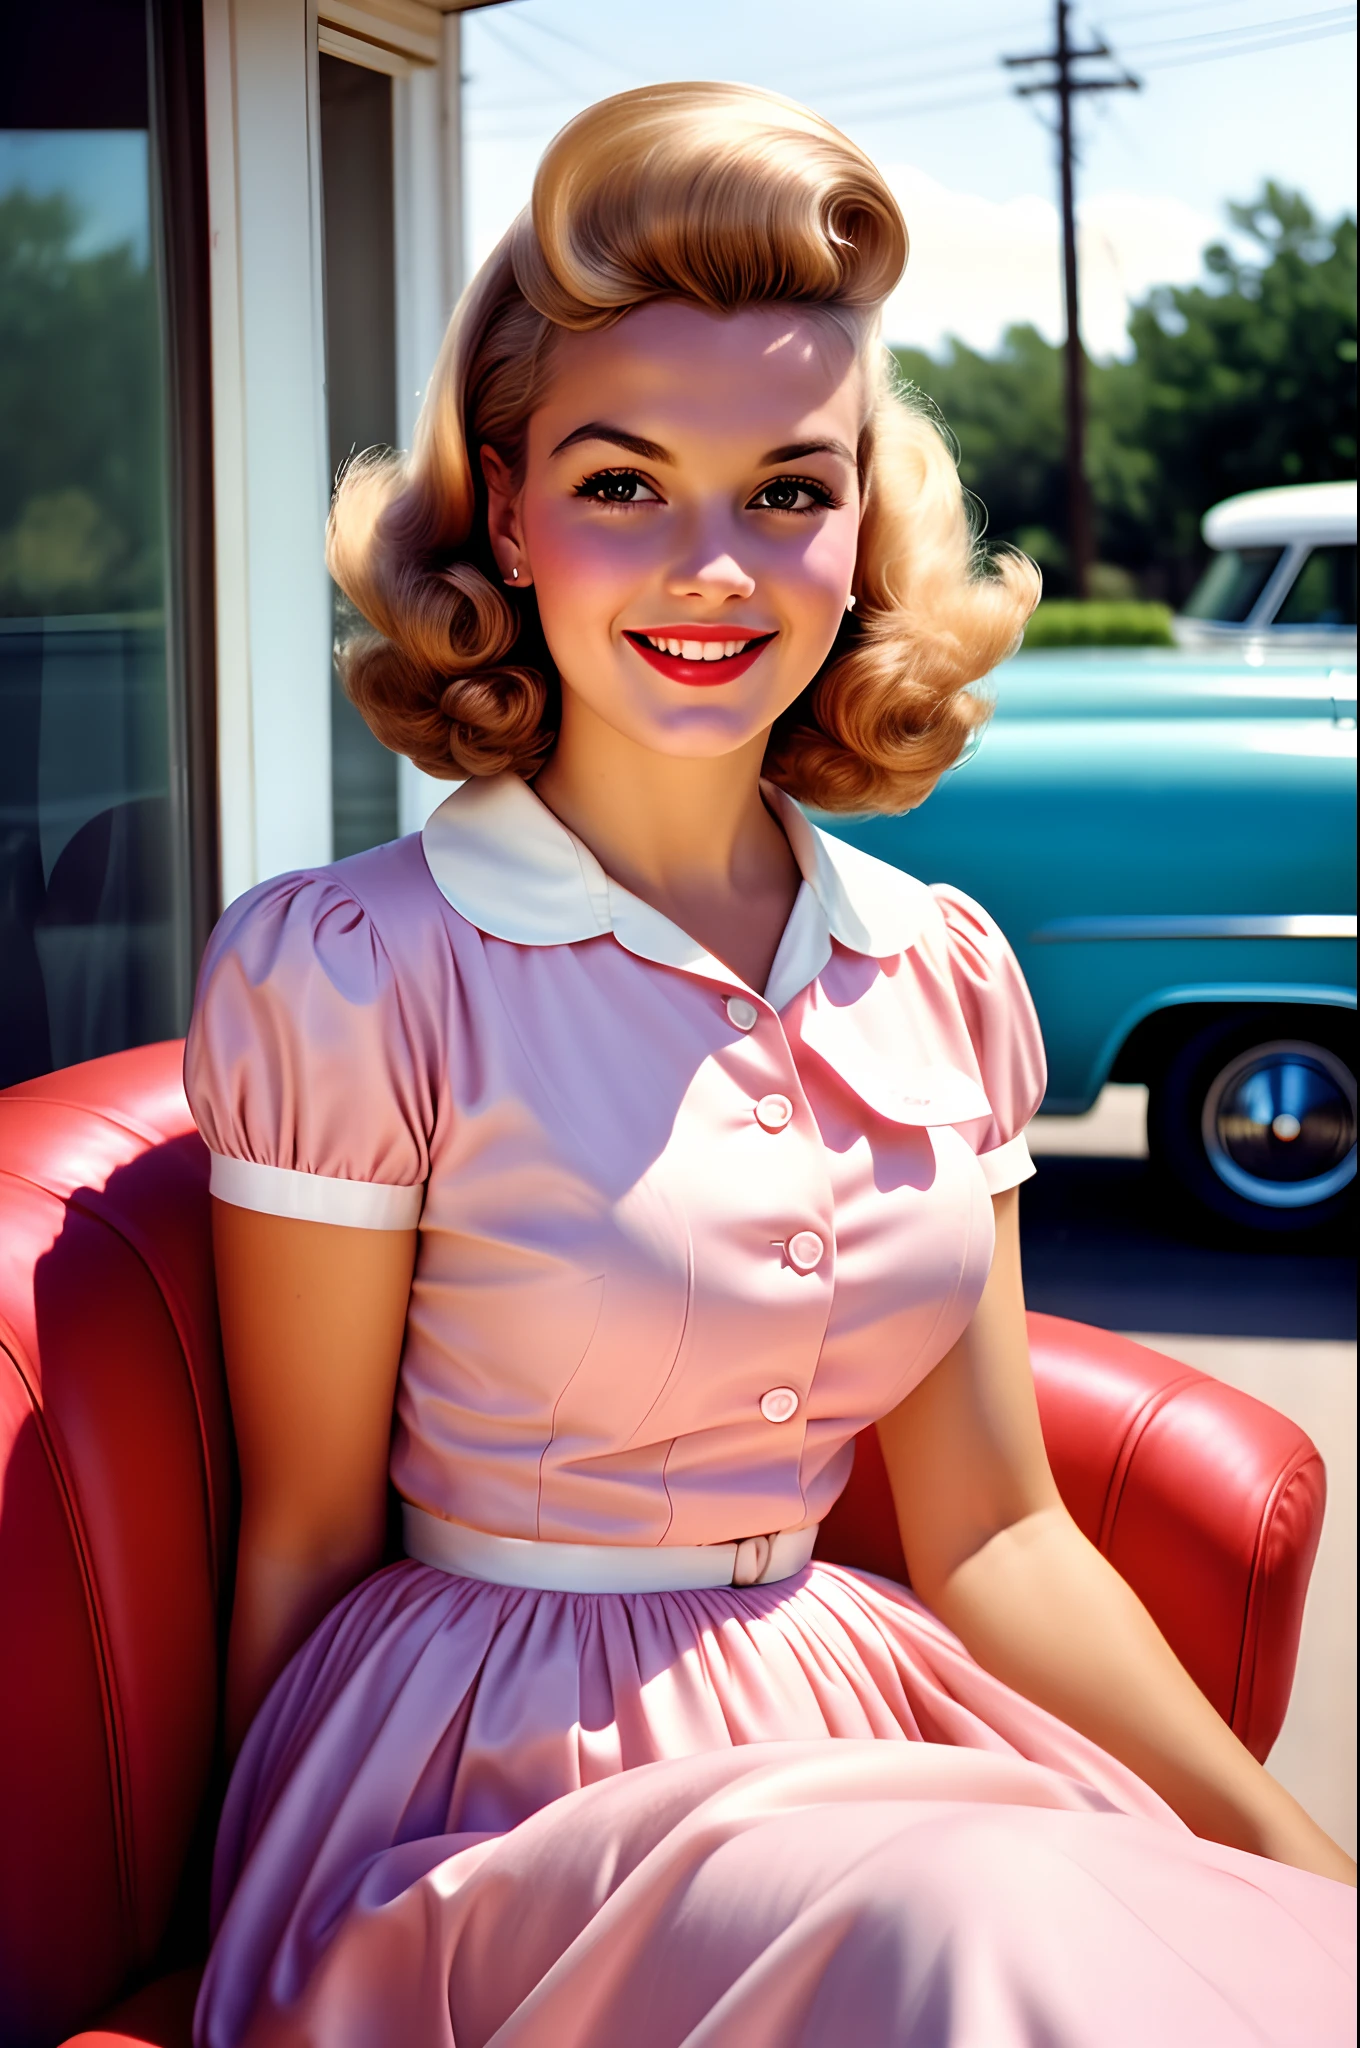 一位美丽的年轻家庭主妇的肖像, 微笑, 穿着淡粉色连衣裙, 这张照片是 20 世纪 50 年代用模拟相机拍摄的. 人们穿着 50 年代传统服装, 留着 50 年代传统发型的人, 摄影：William Eggleston, 50 年代风格, 非常详细, 略微褪色的粉彩色, 稍微模糊, 略带颗粒感, 胶片摄影